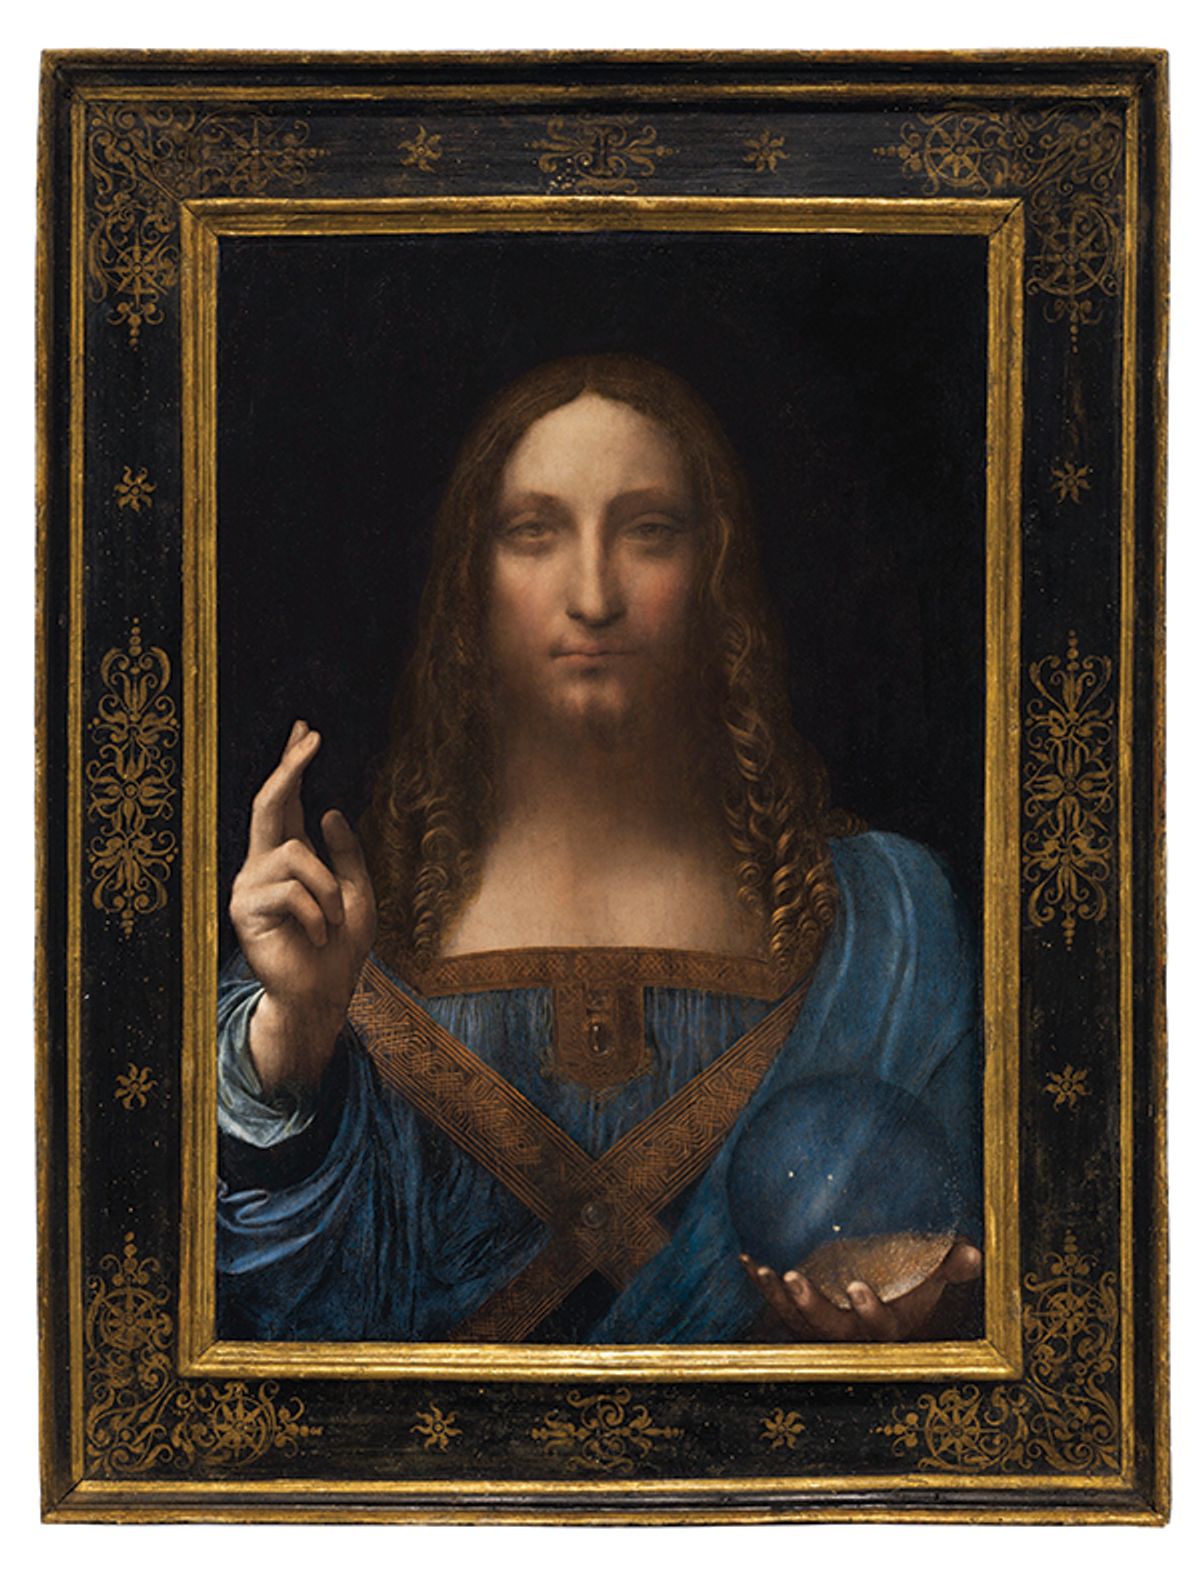 Leonardo da Vinci's Salvator Mundi Christie’s Images, 2017